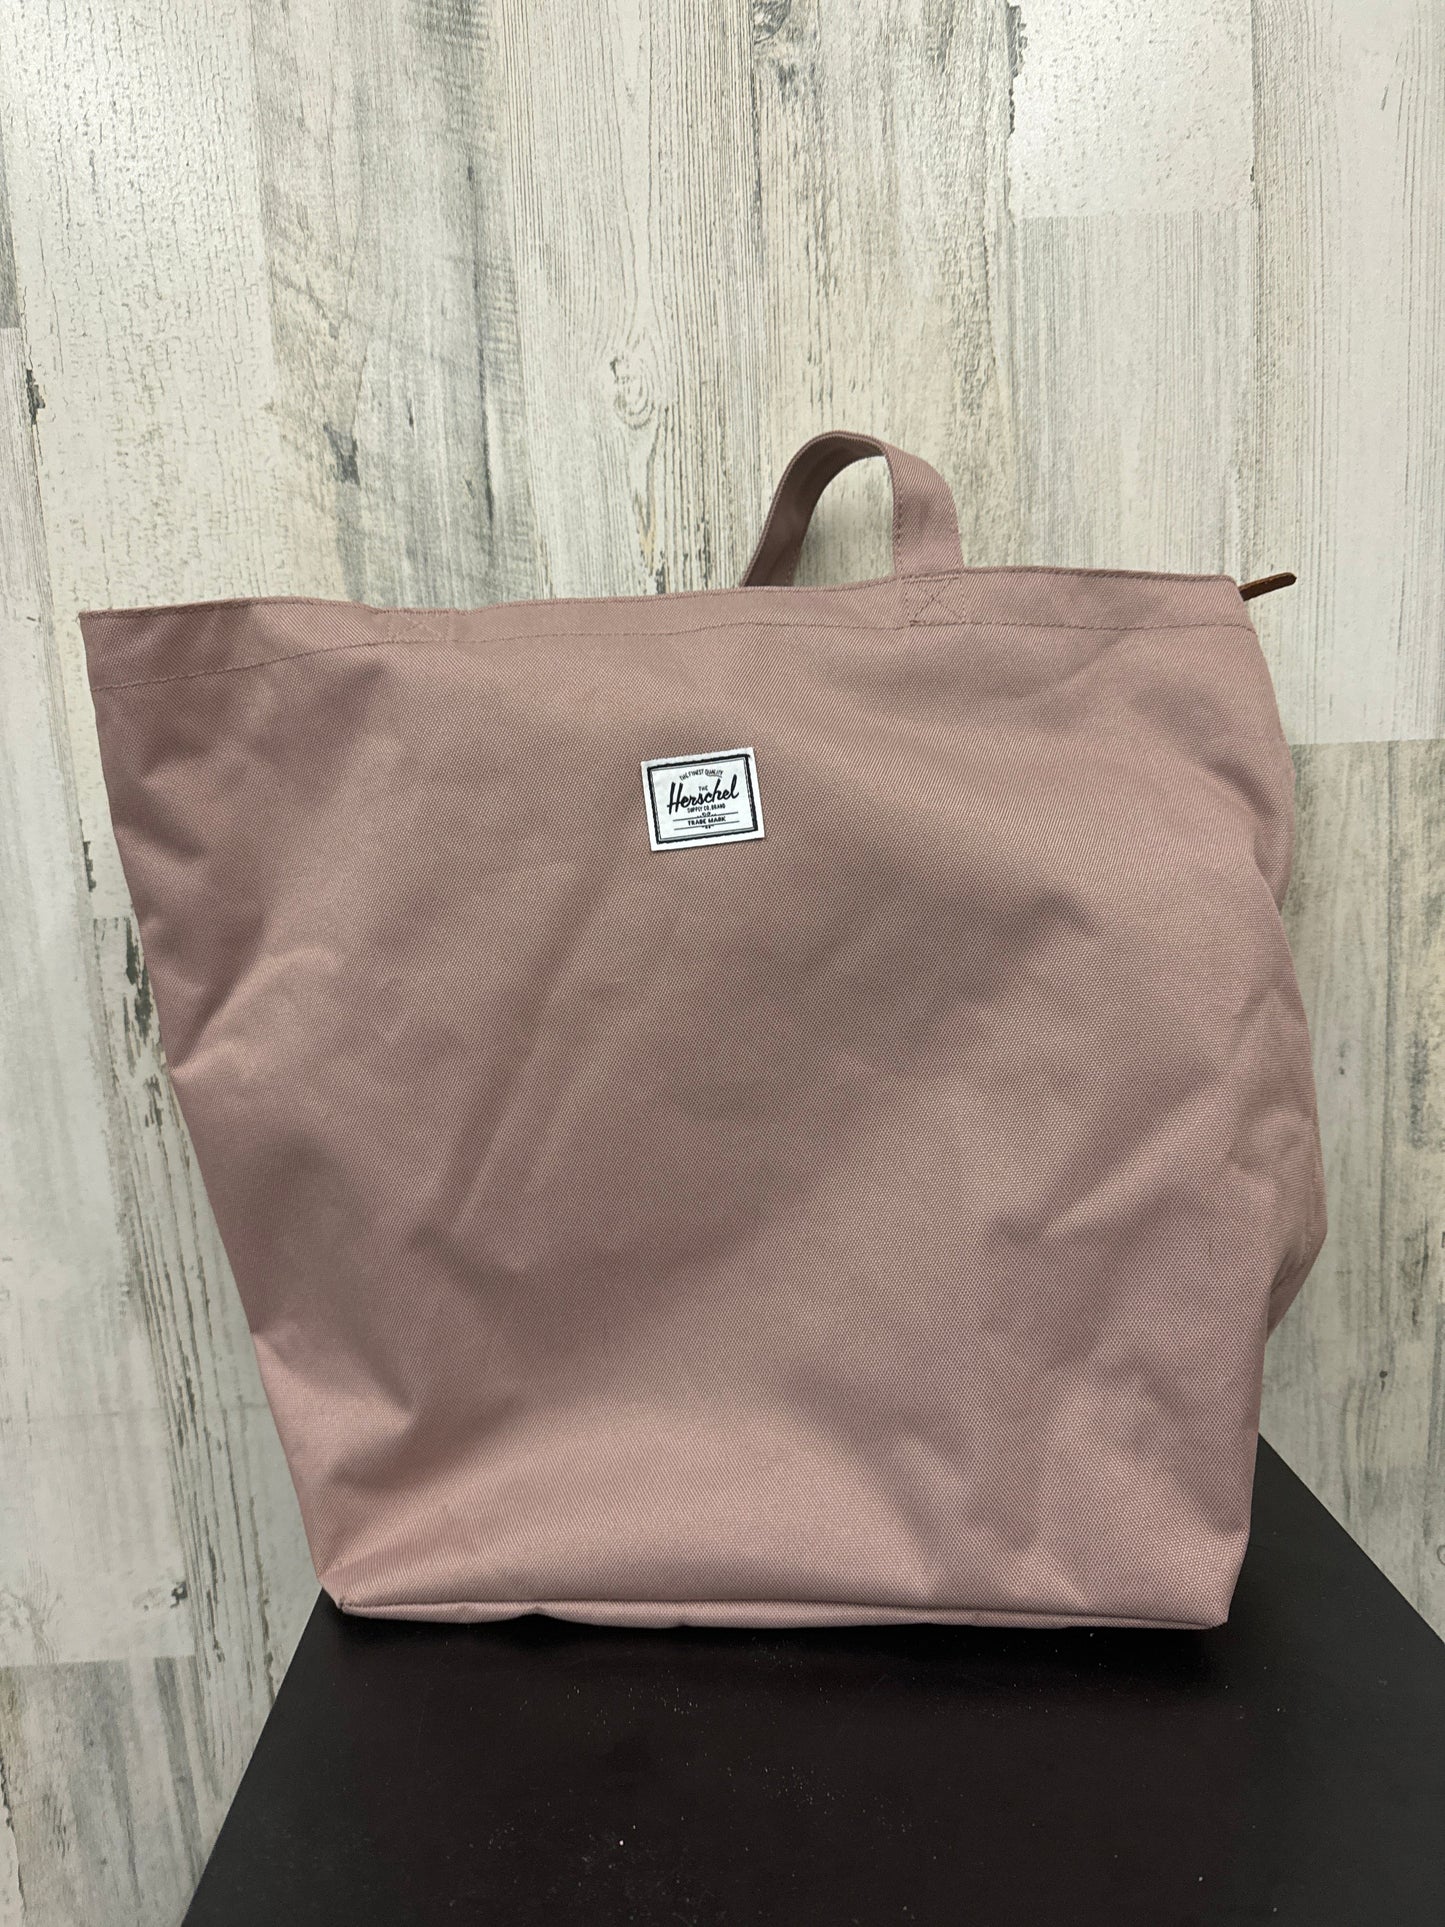 Handbag By Herschel  Size: Medium